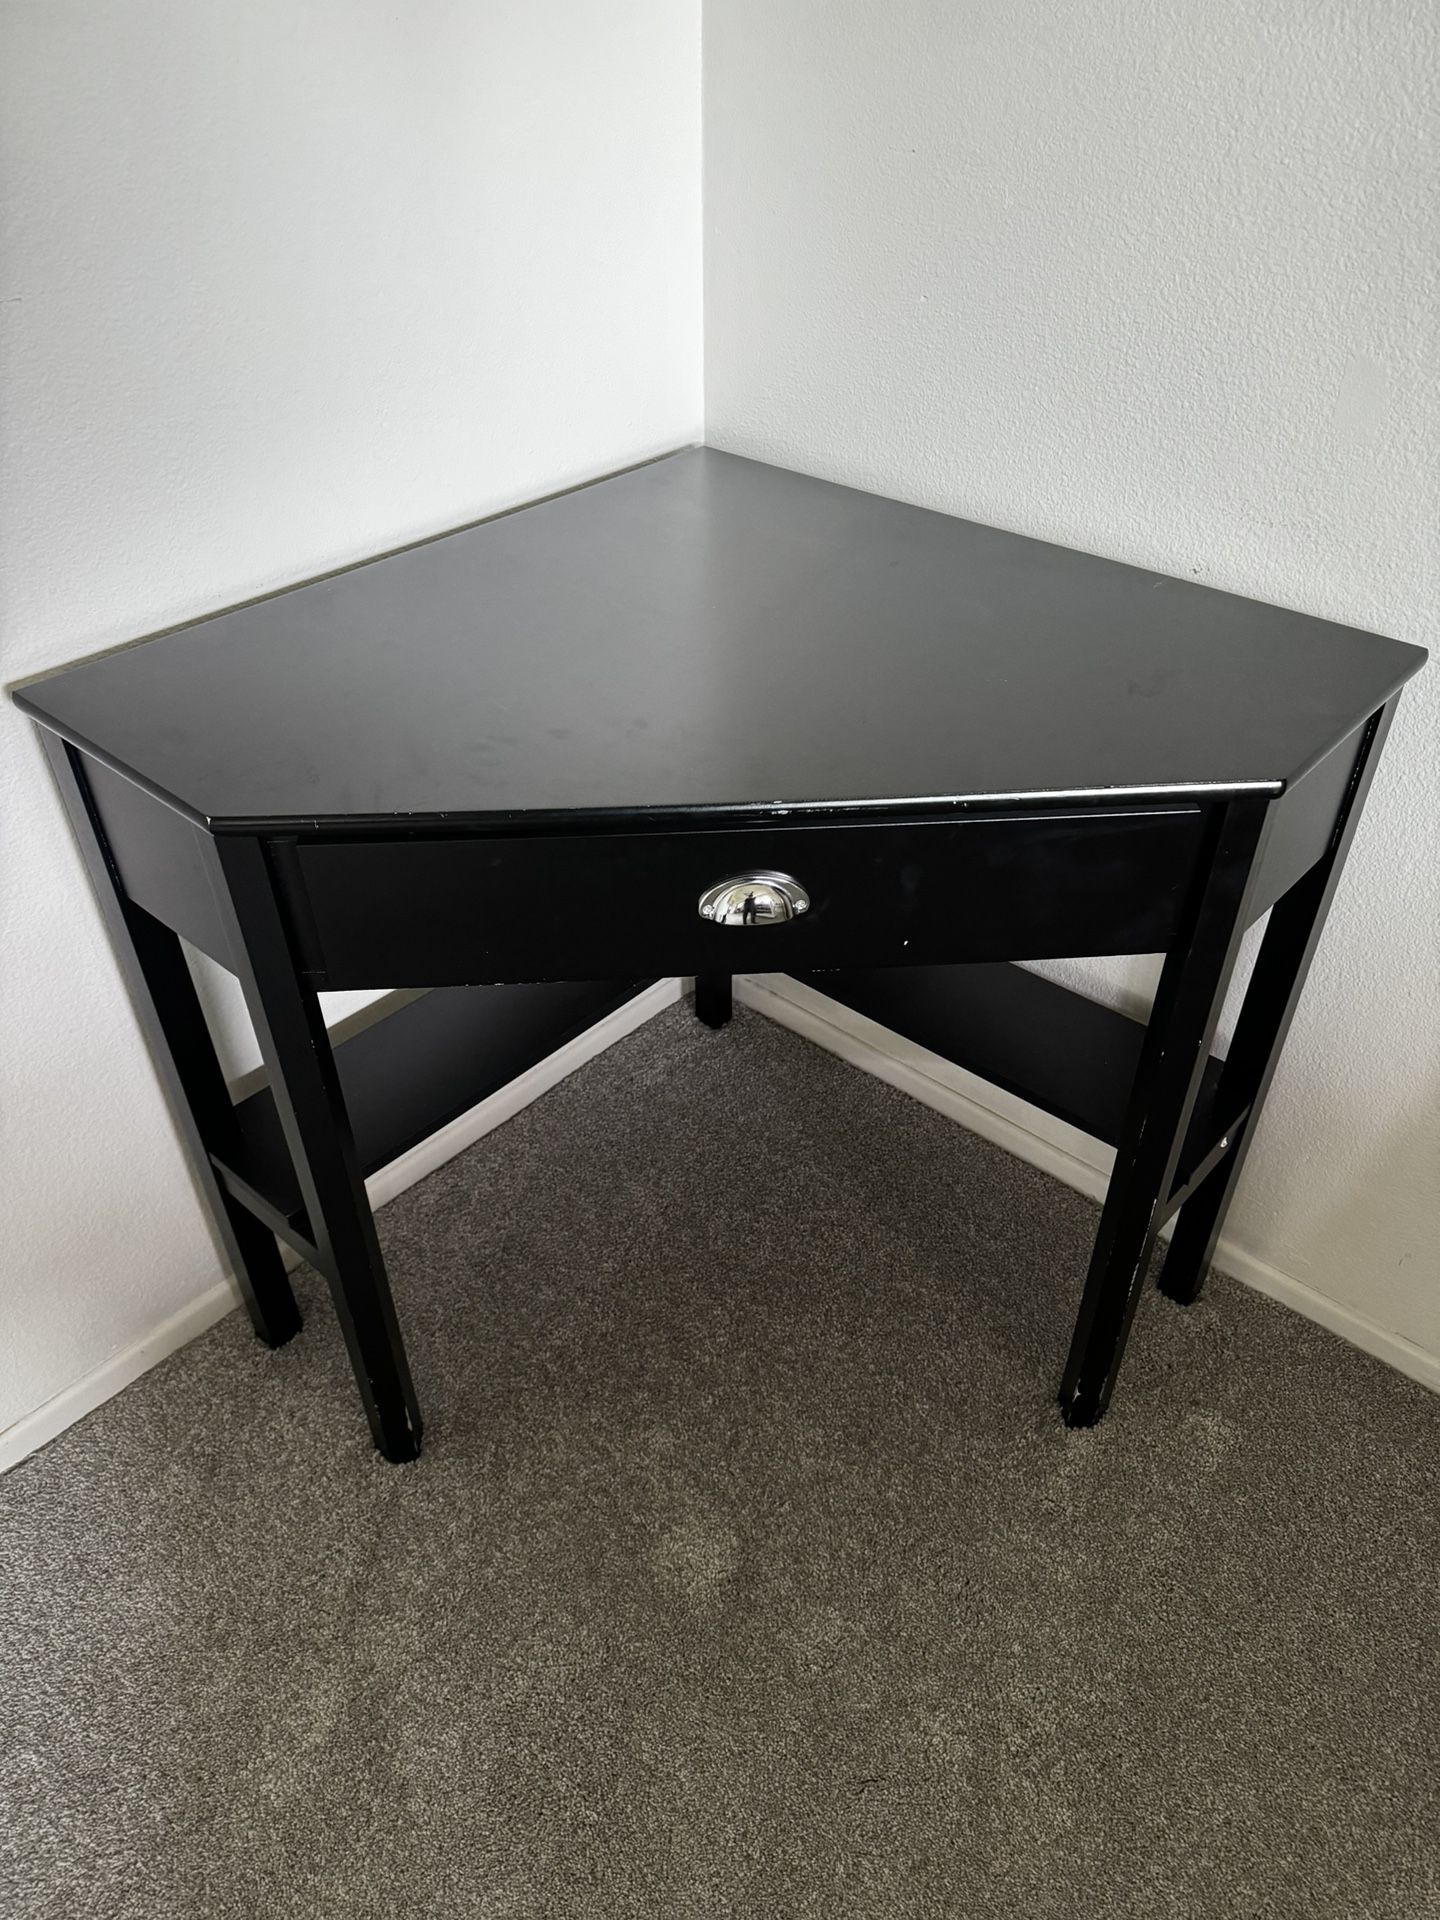 Corner Desk For Sale